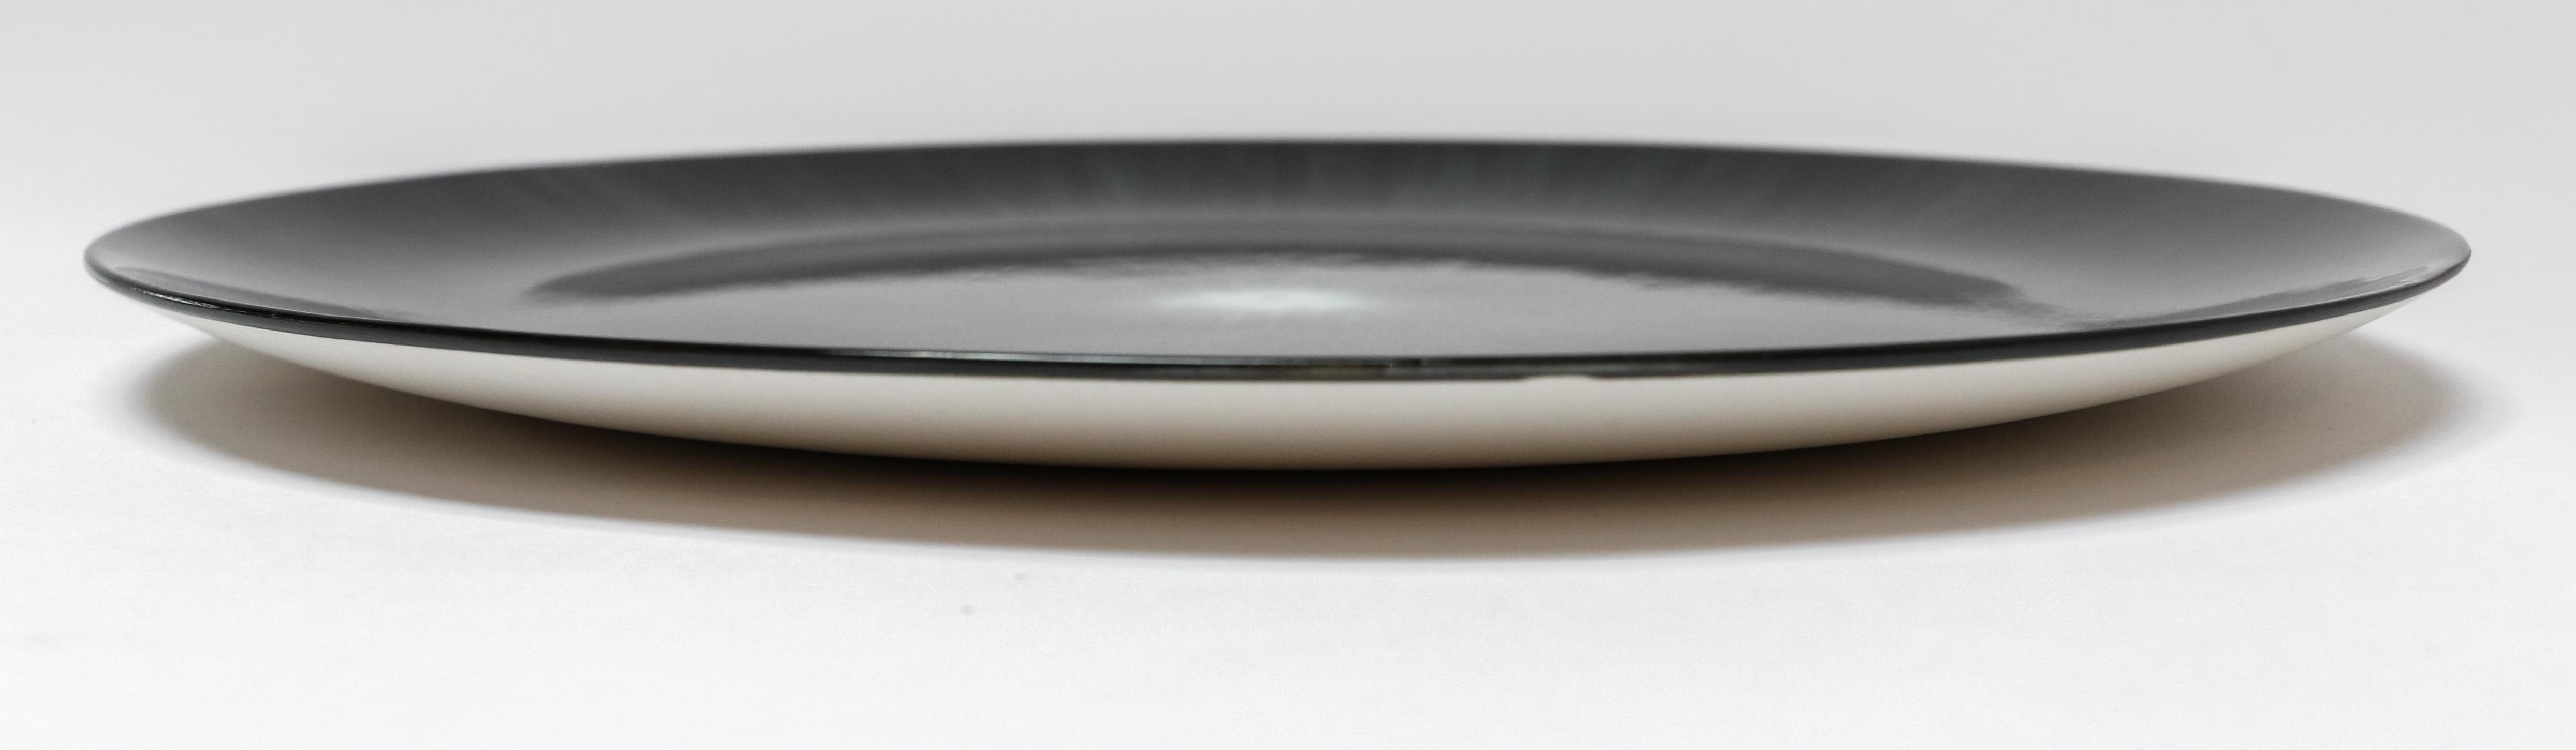 Belgian Ann Demeulemeester for Serax Dé Dinner Plate in Black / Off White